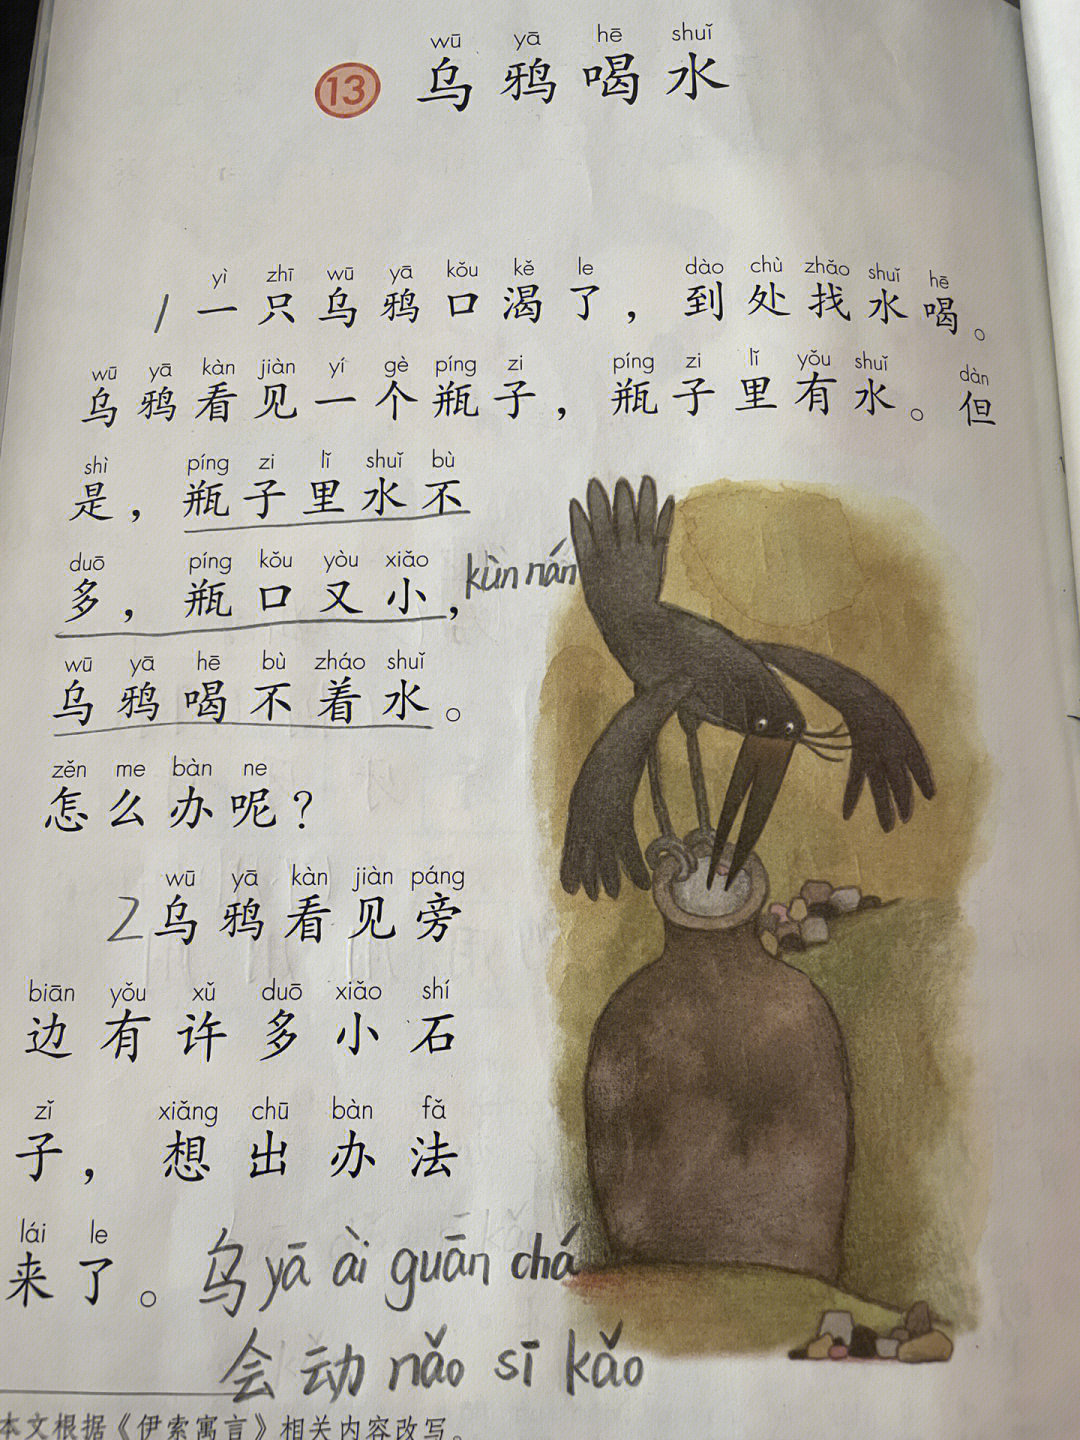 乌鸦喝水原文课文图片